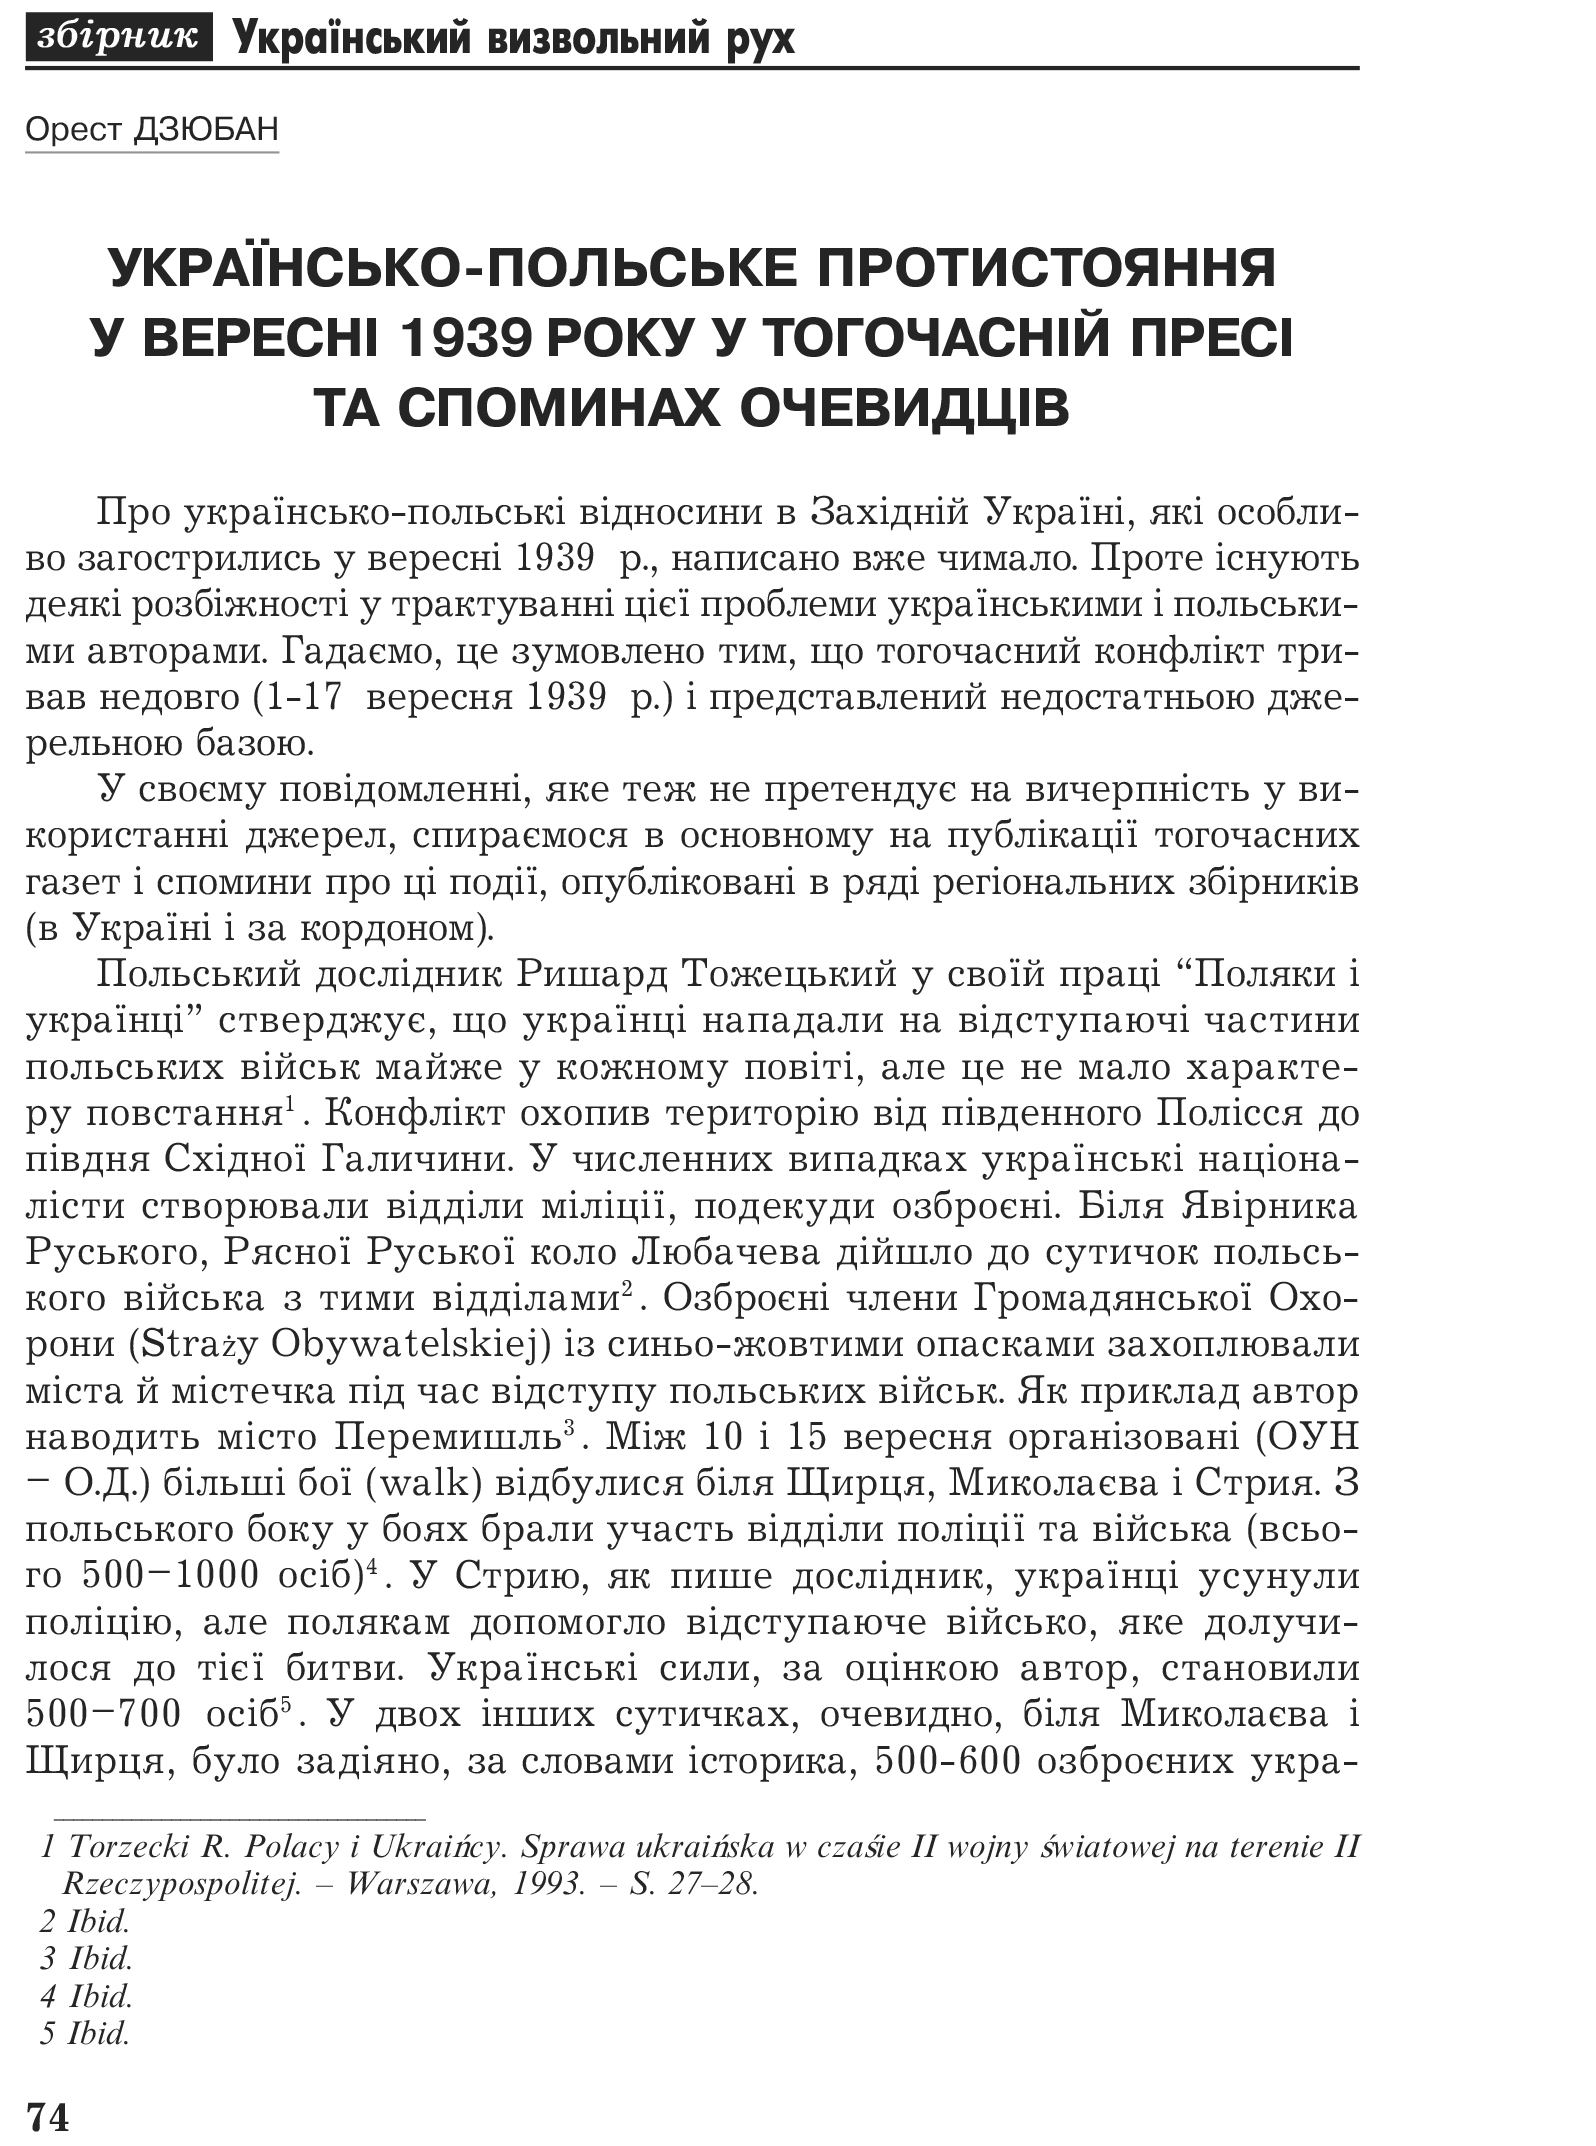 Український визвольний рух №2, ст. 74 - 85